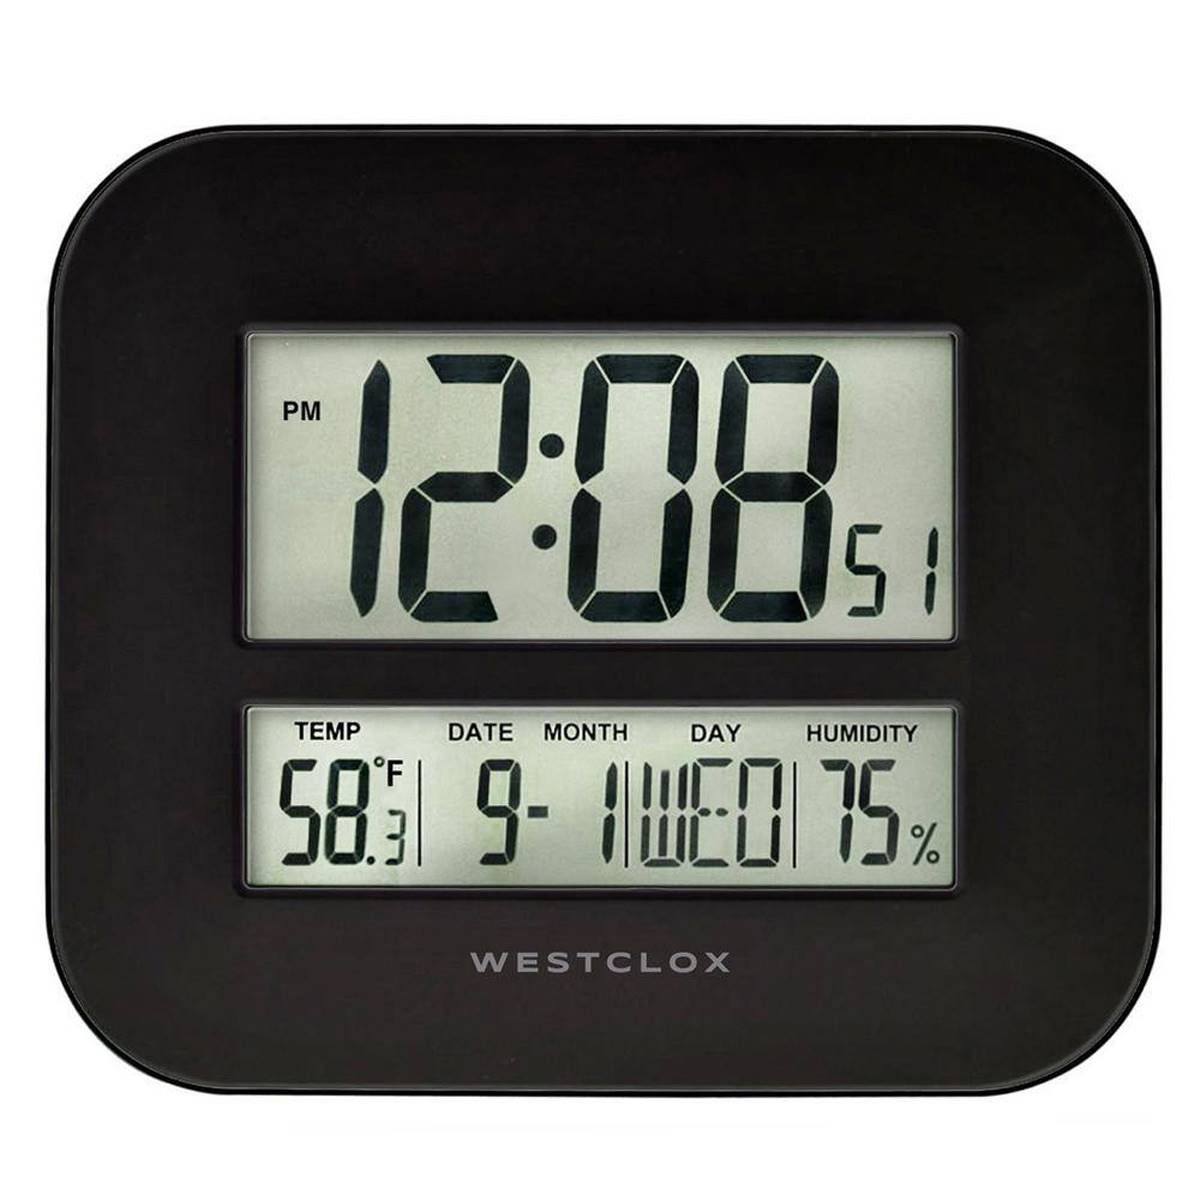 Westclox Large Digital Wall Clock W/ Date & Temp